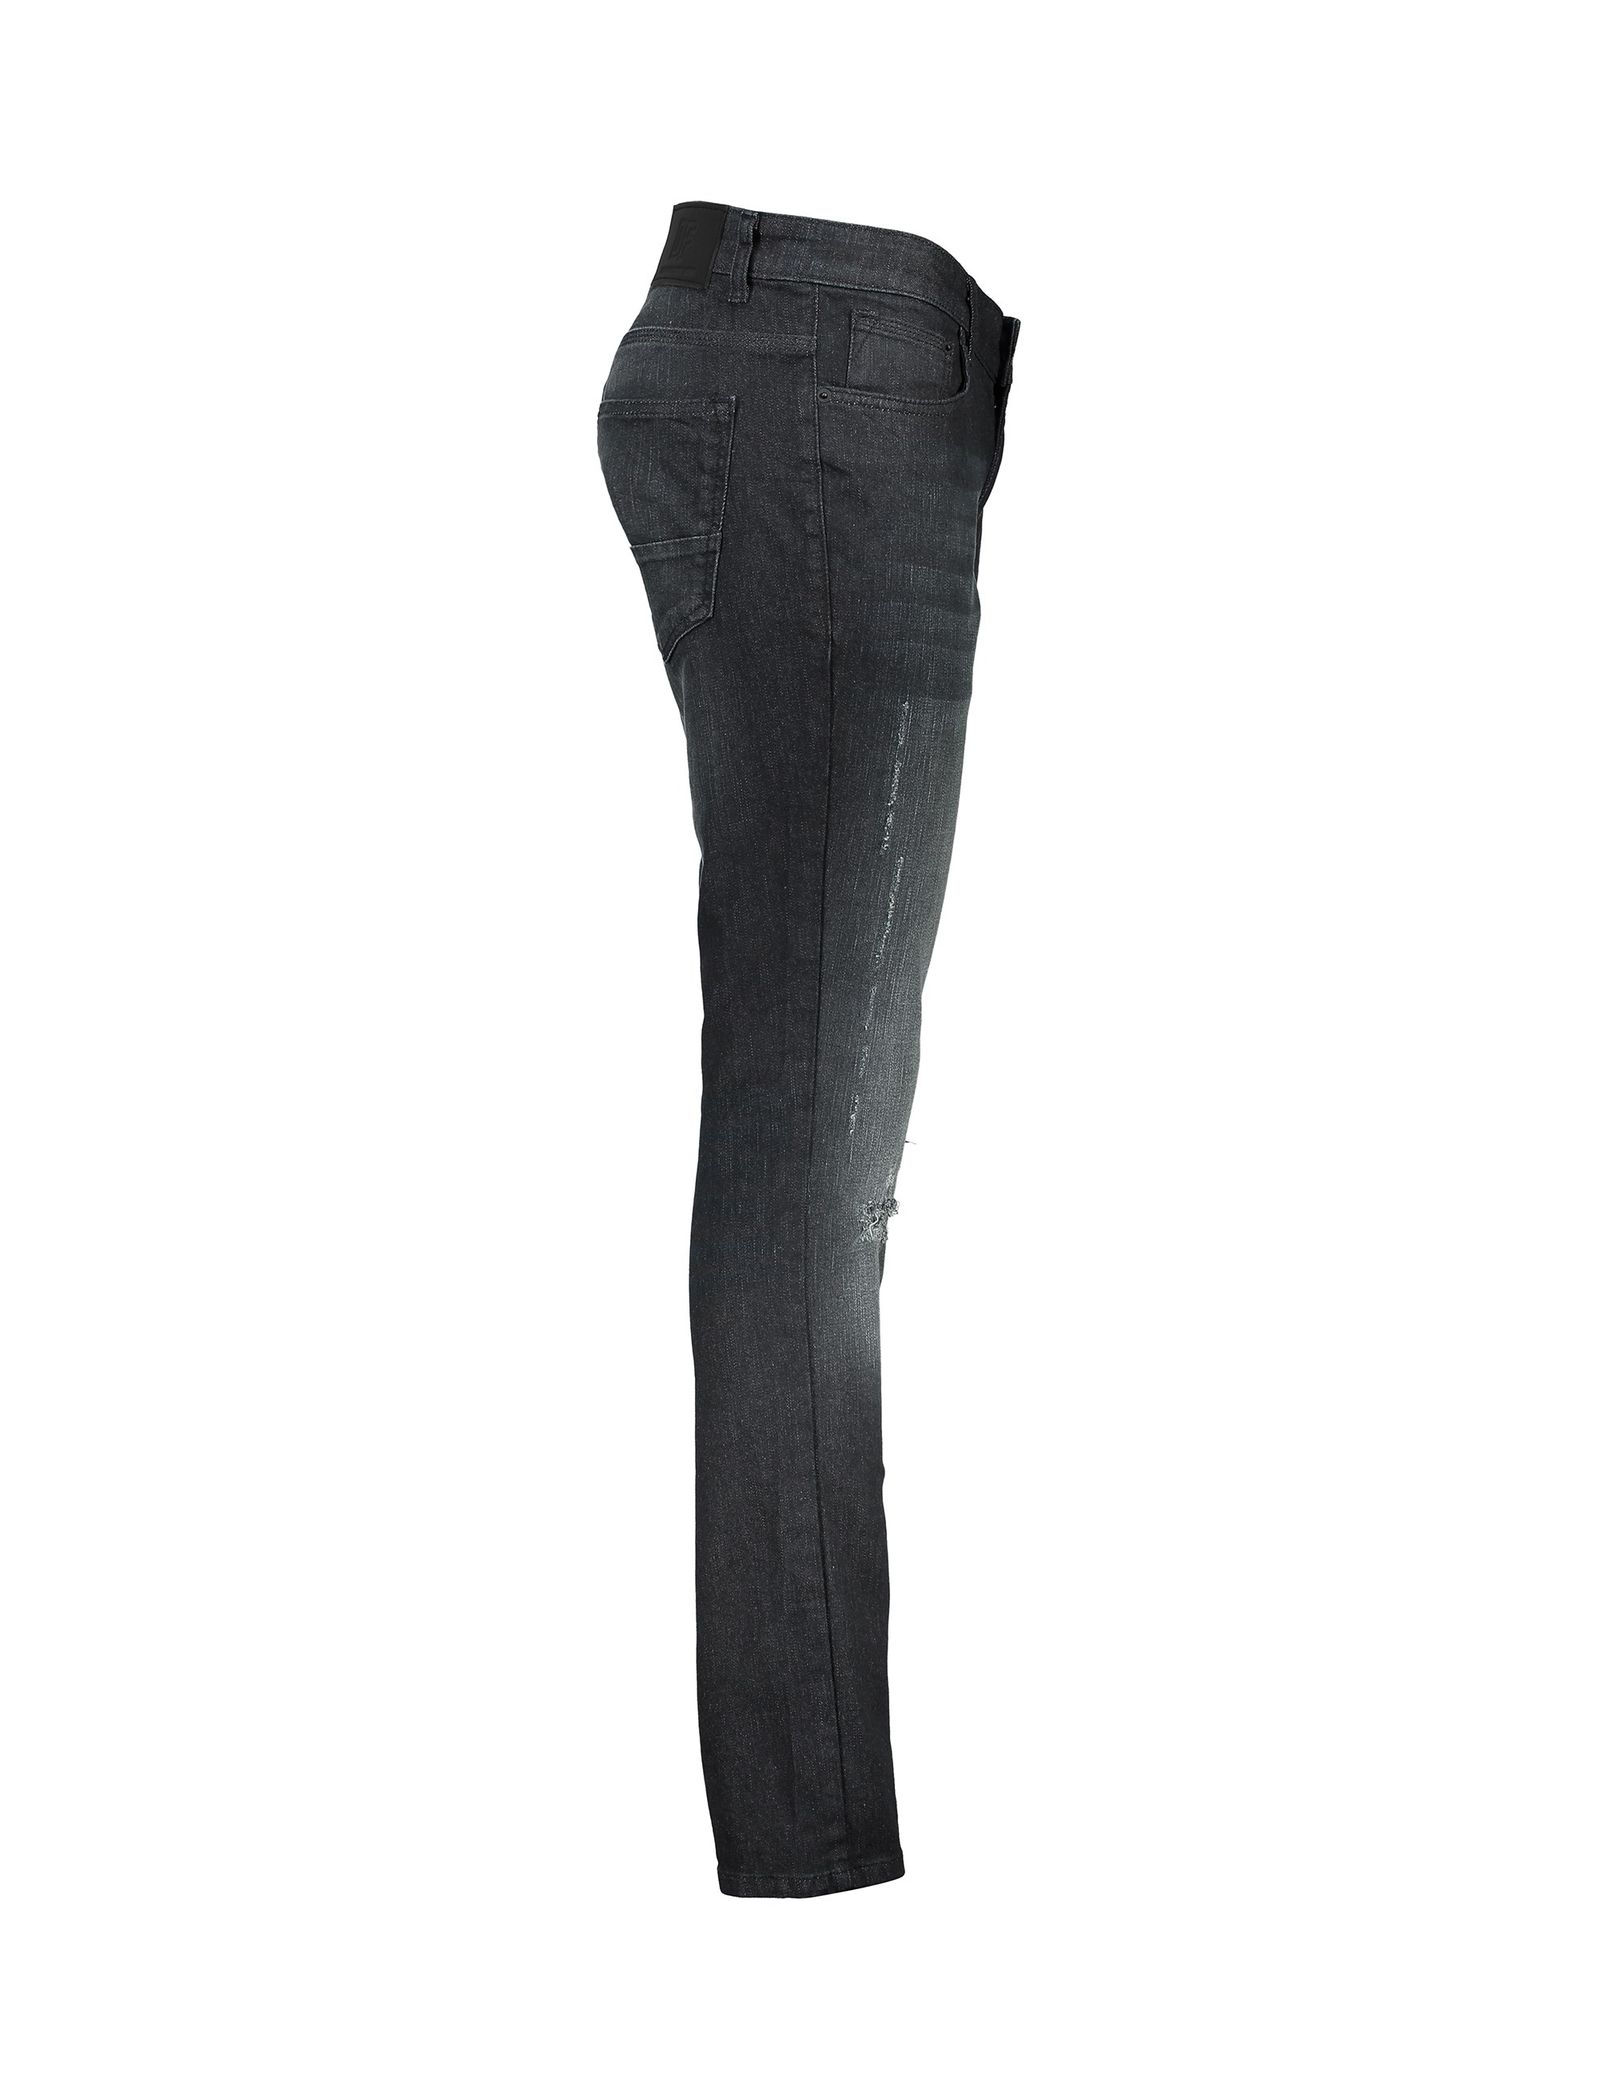 شلوار جین راسته مردانه - دفکتو - زغالي - 5